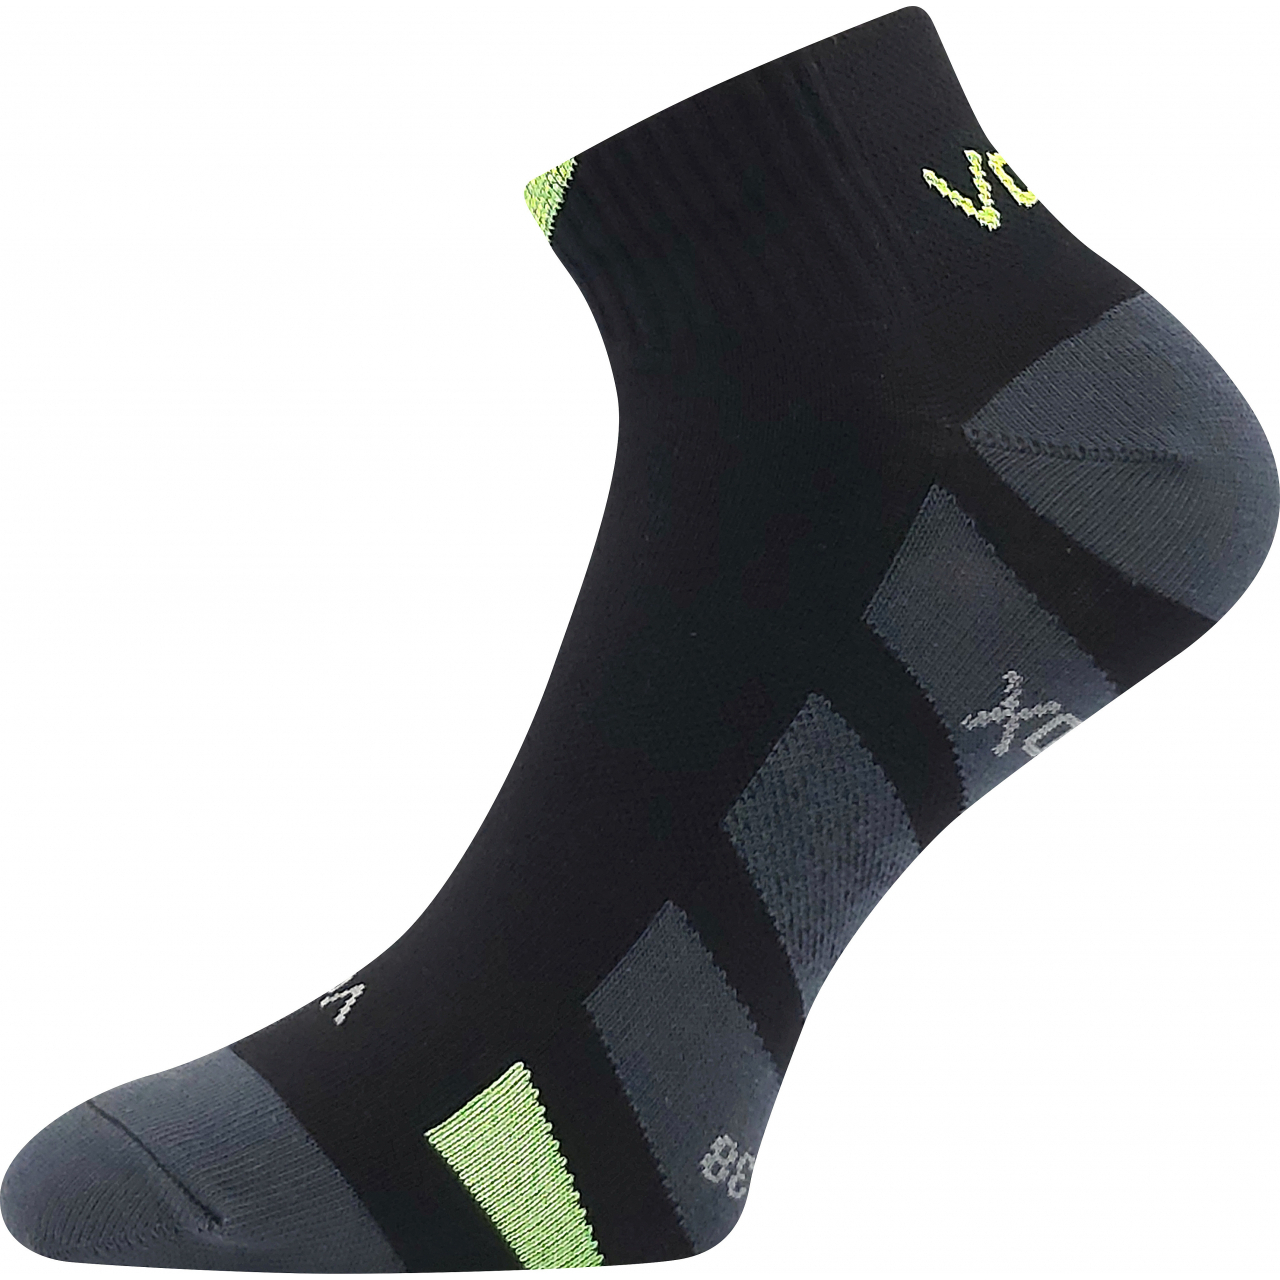 Ponožky unisex slabé Voxx Gastm - černé, 43-46